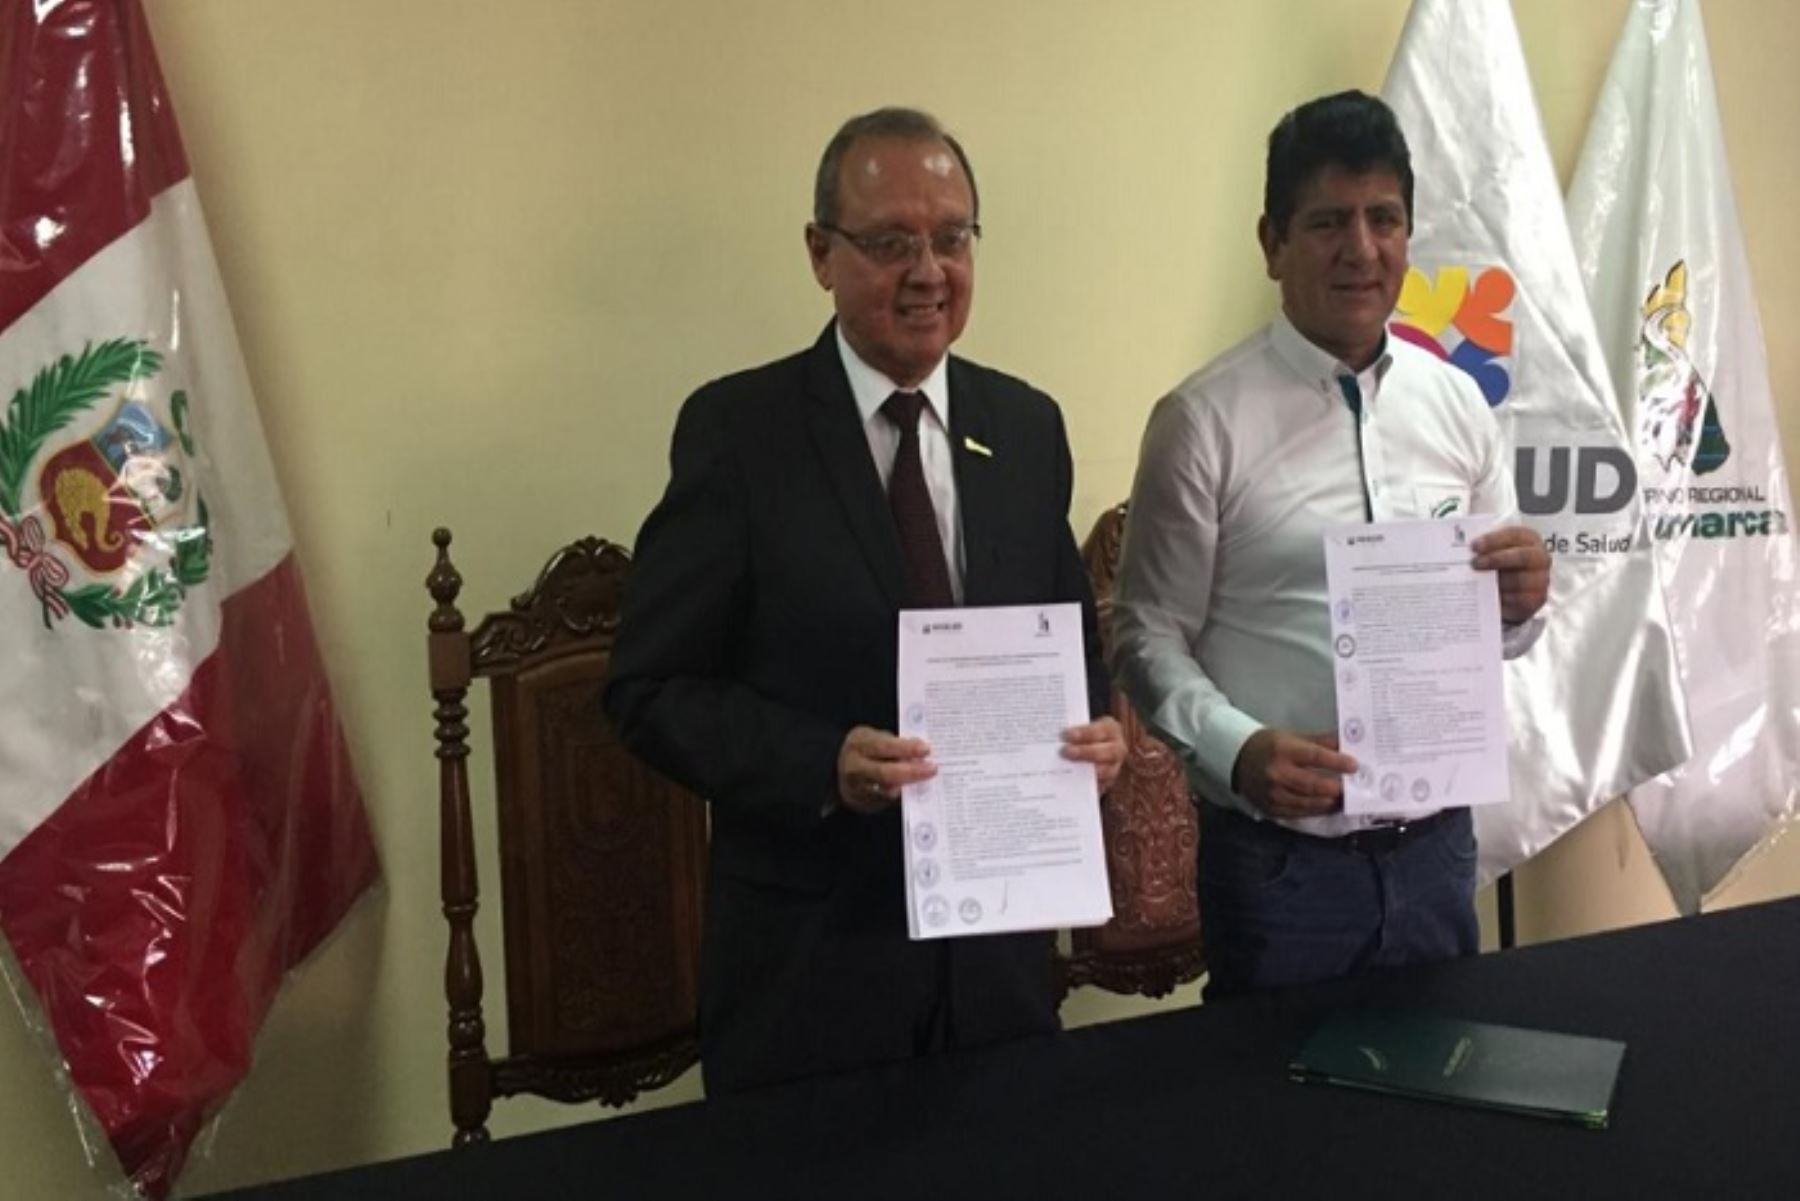 La Superintendencia Nacional de Salud (Susalud) y el Gobierno Regional de Cajamarca suscribieron un convenio de cooperación interinstitucional, con el objetivo de impulsar acciones conjuntas para promover, proteger y defender los derechos de las personas al acceso de los servicios de salud.